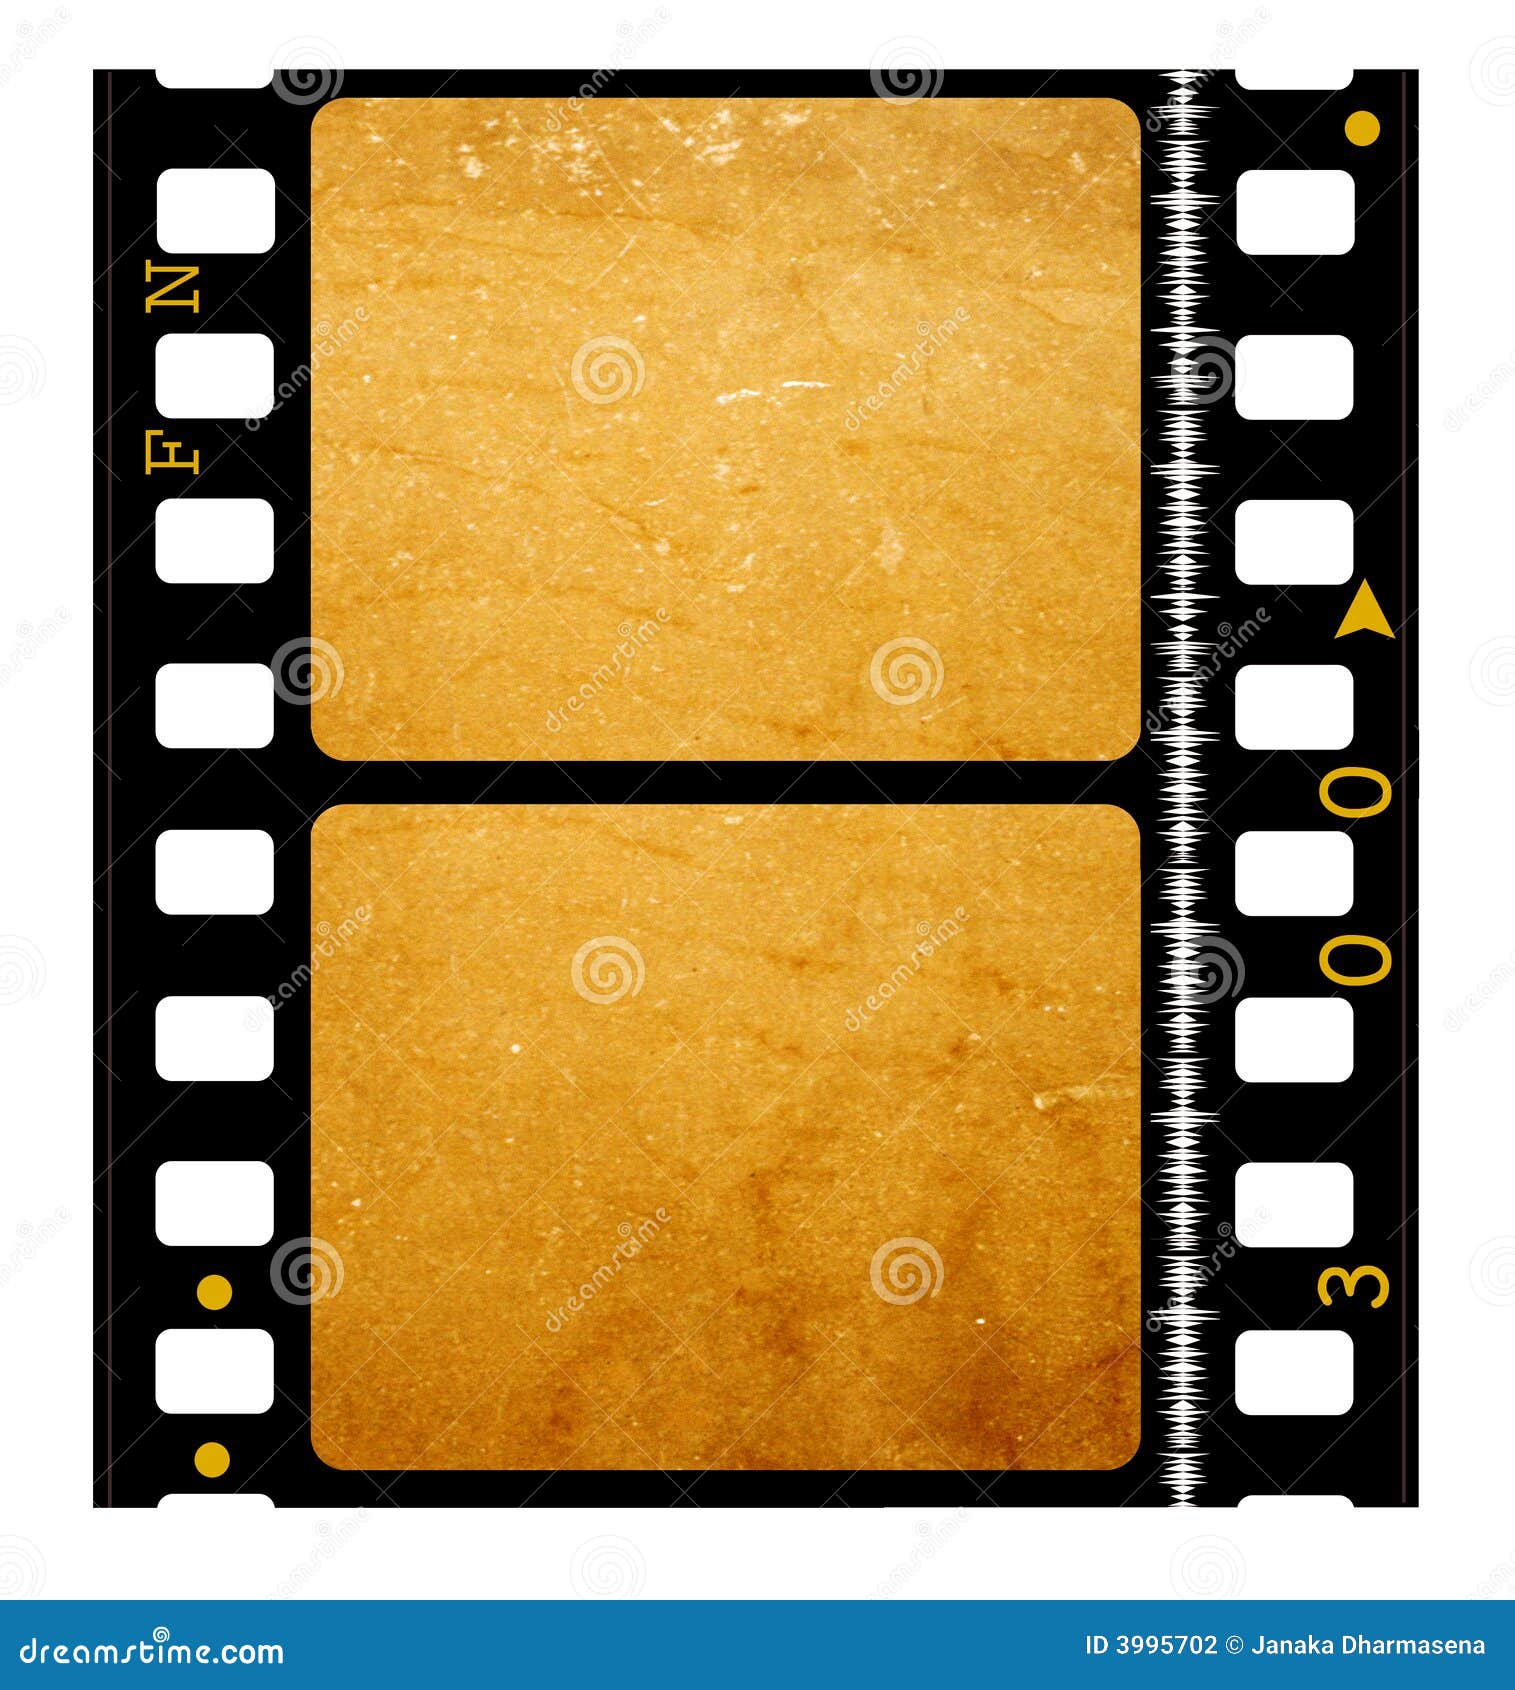 35 mm movie Film reel stock illustration. Illustration of digital